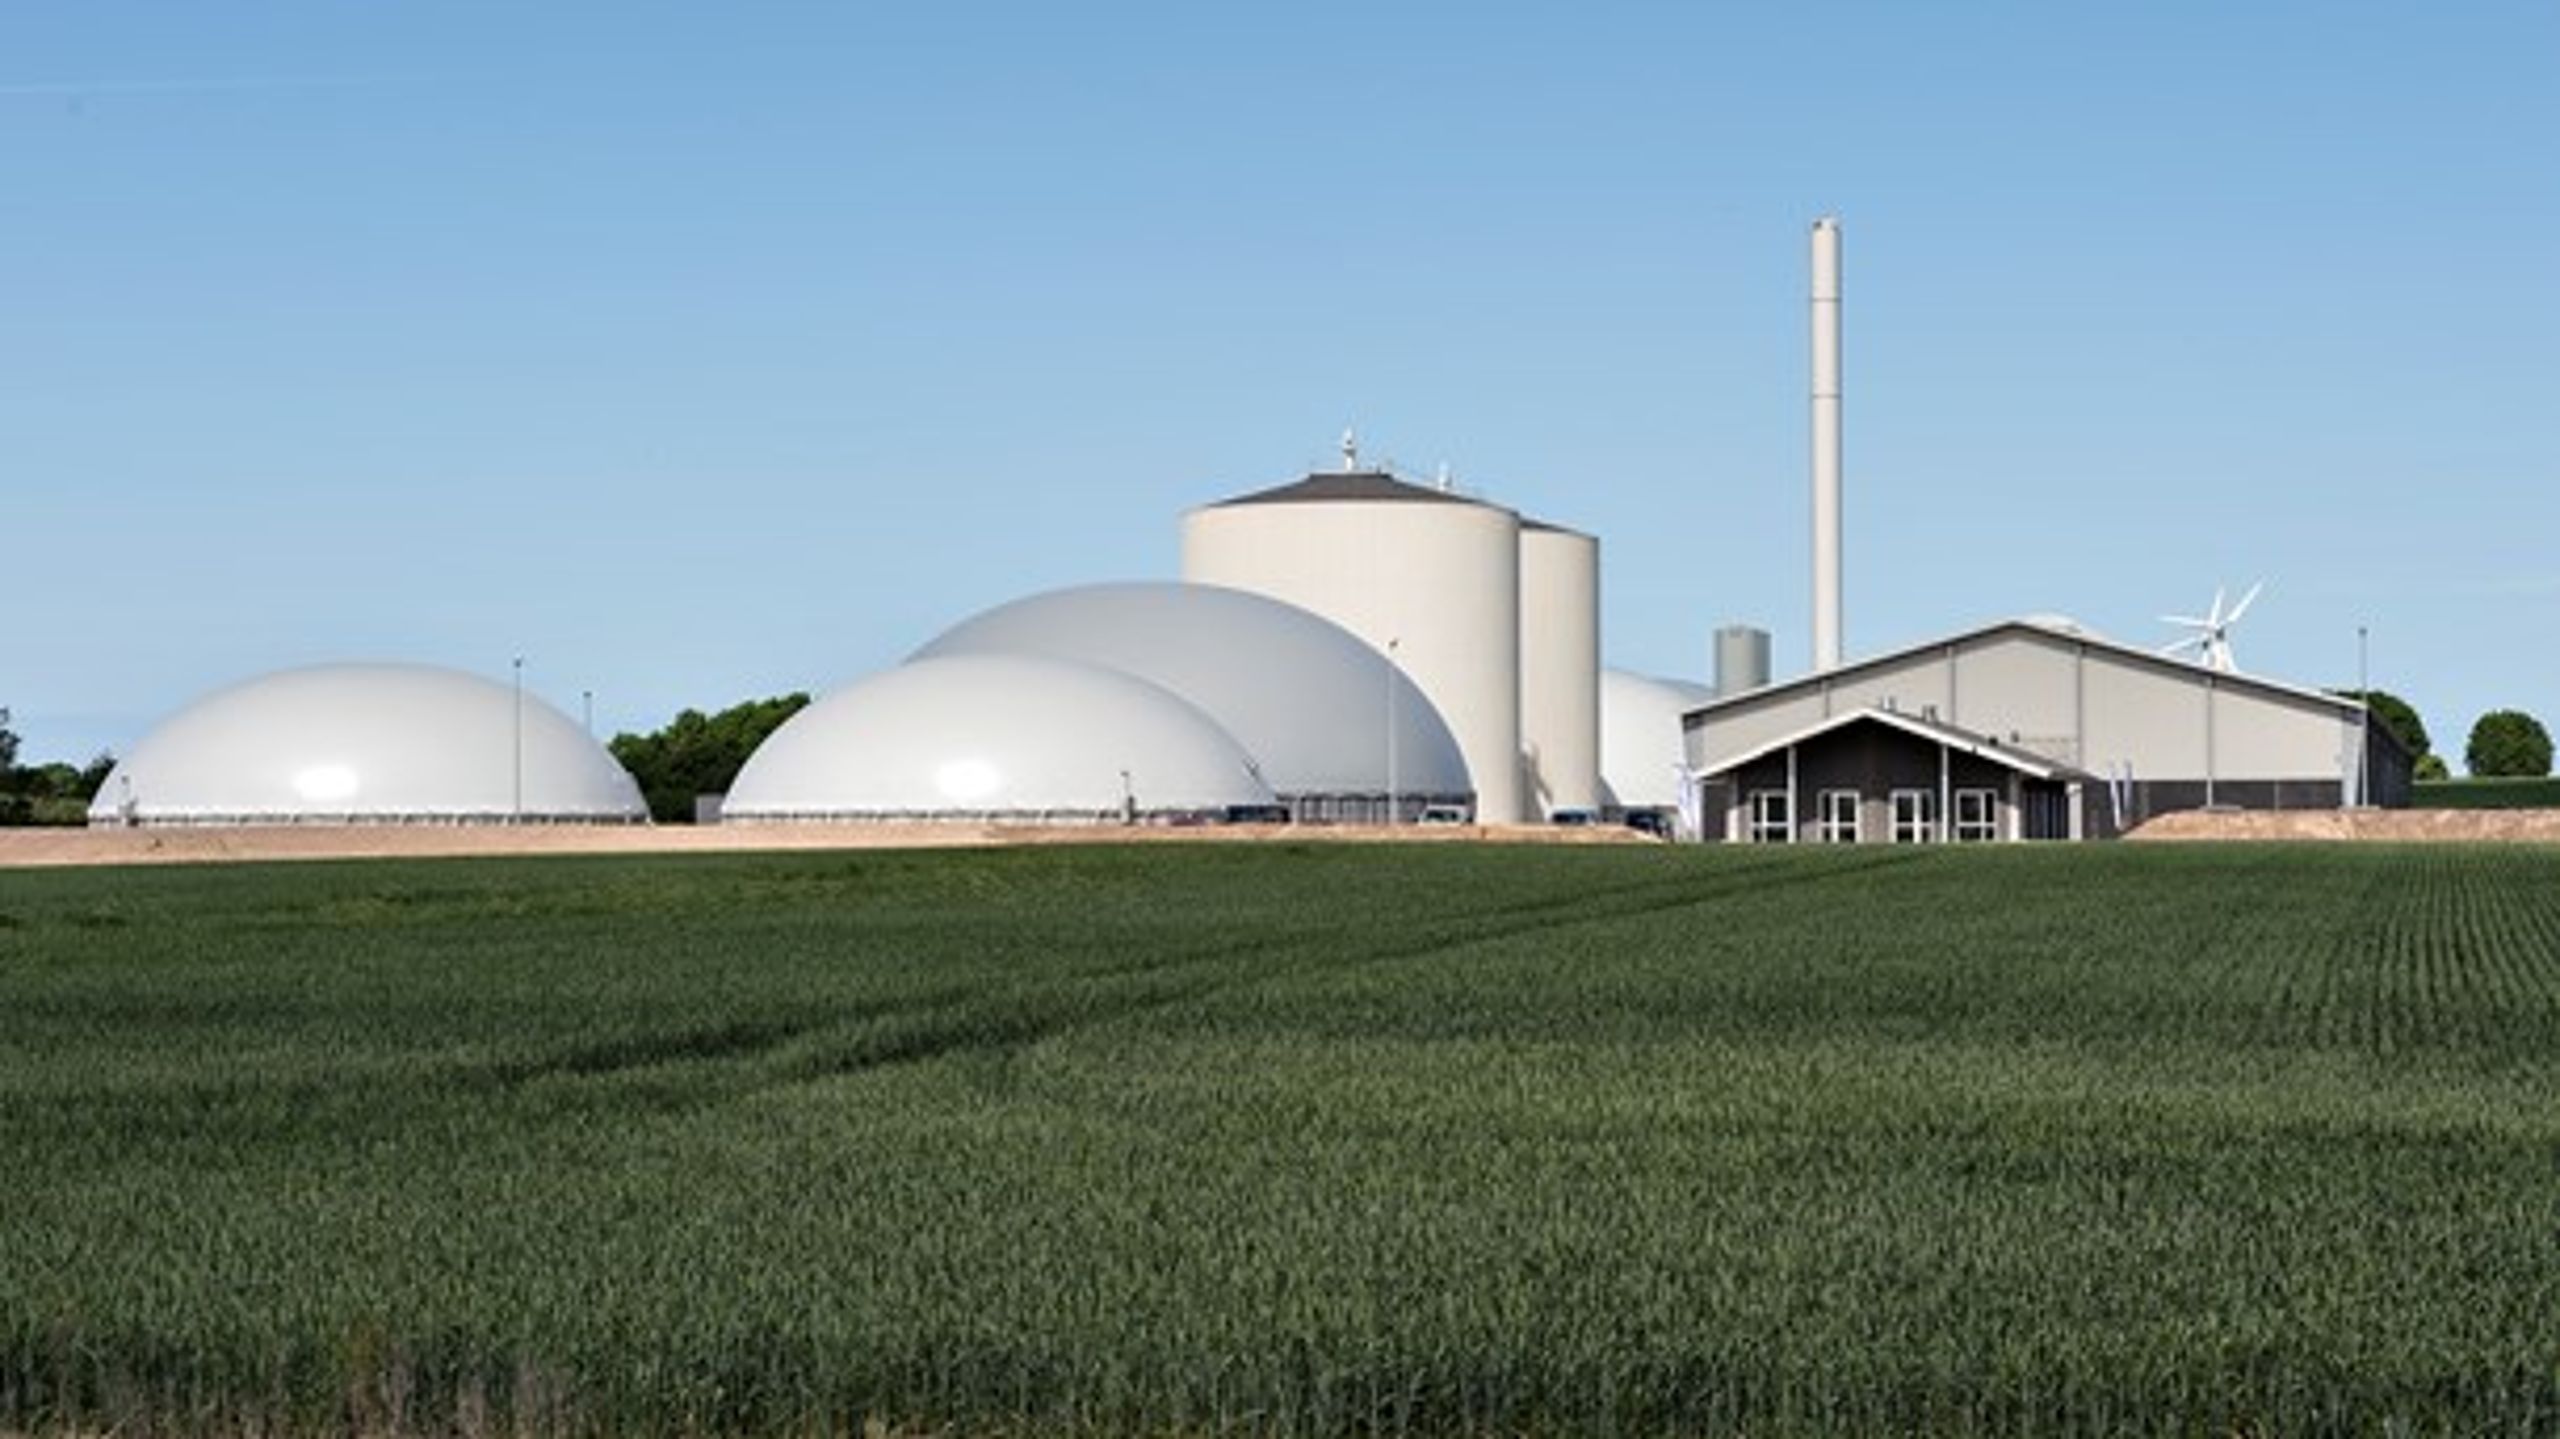 De danske landmænd leverer hvert år cirka fire millioner ton husdyrgødning til de fælles biogasanlæg.